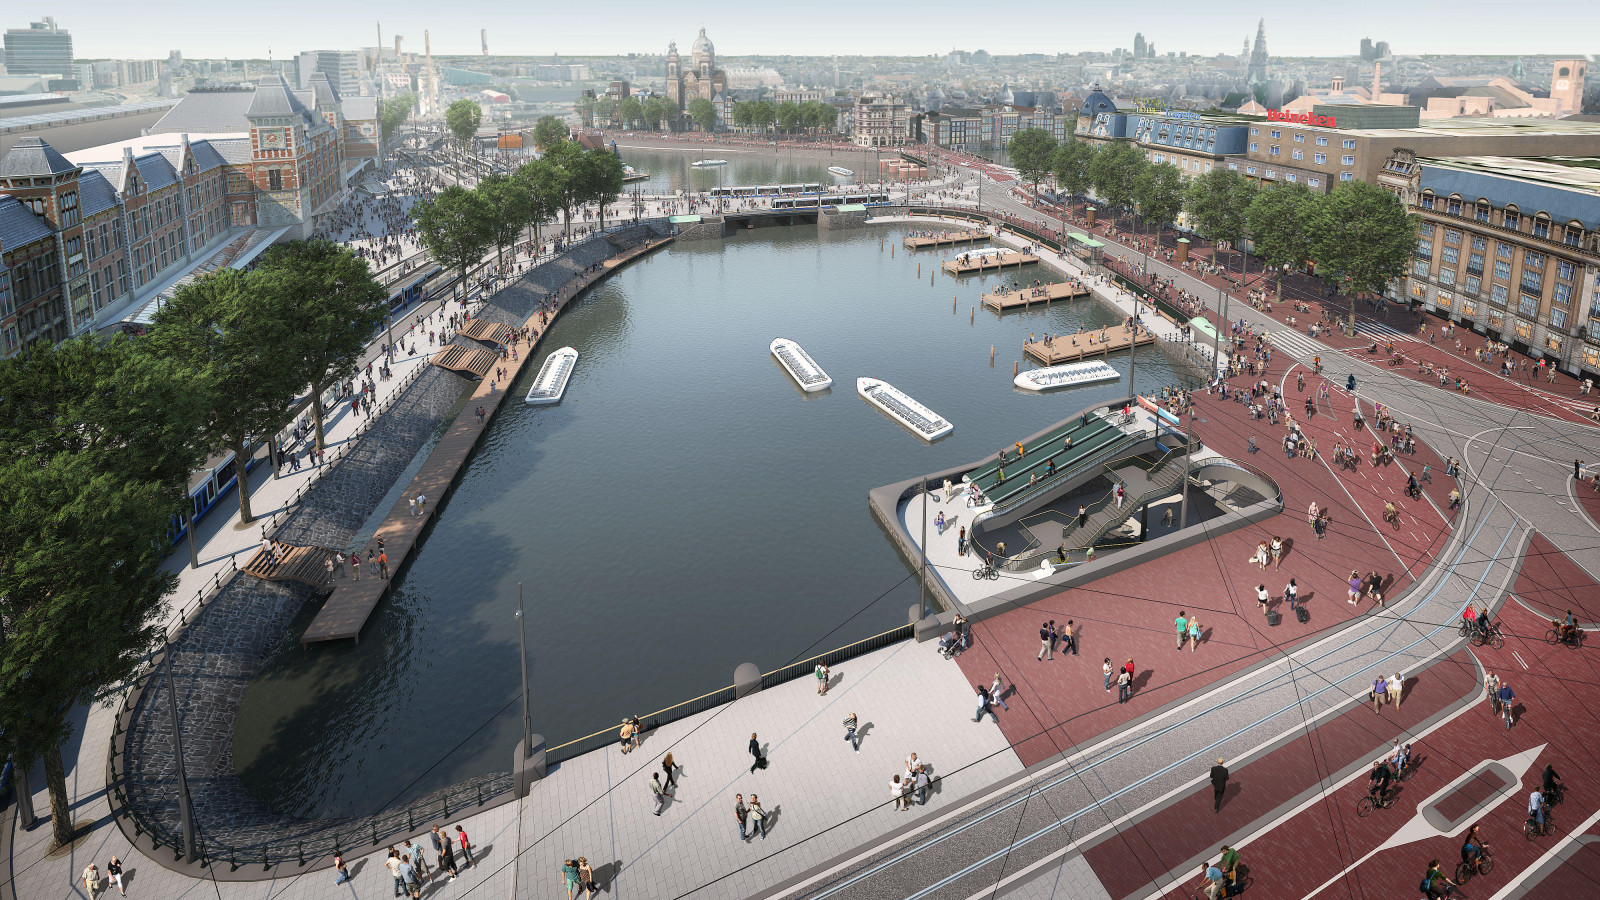 bijvoeglijk naamwoord Uitleg Of anders Contouren gigantische fietsgarage Amsterdam CS zichtbaar: "Hier komen 7000  fietsen te staan" - NH Nieuws